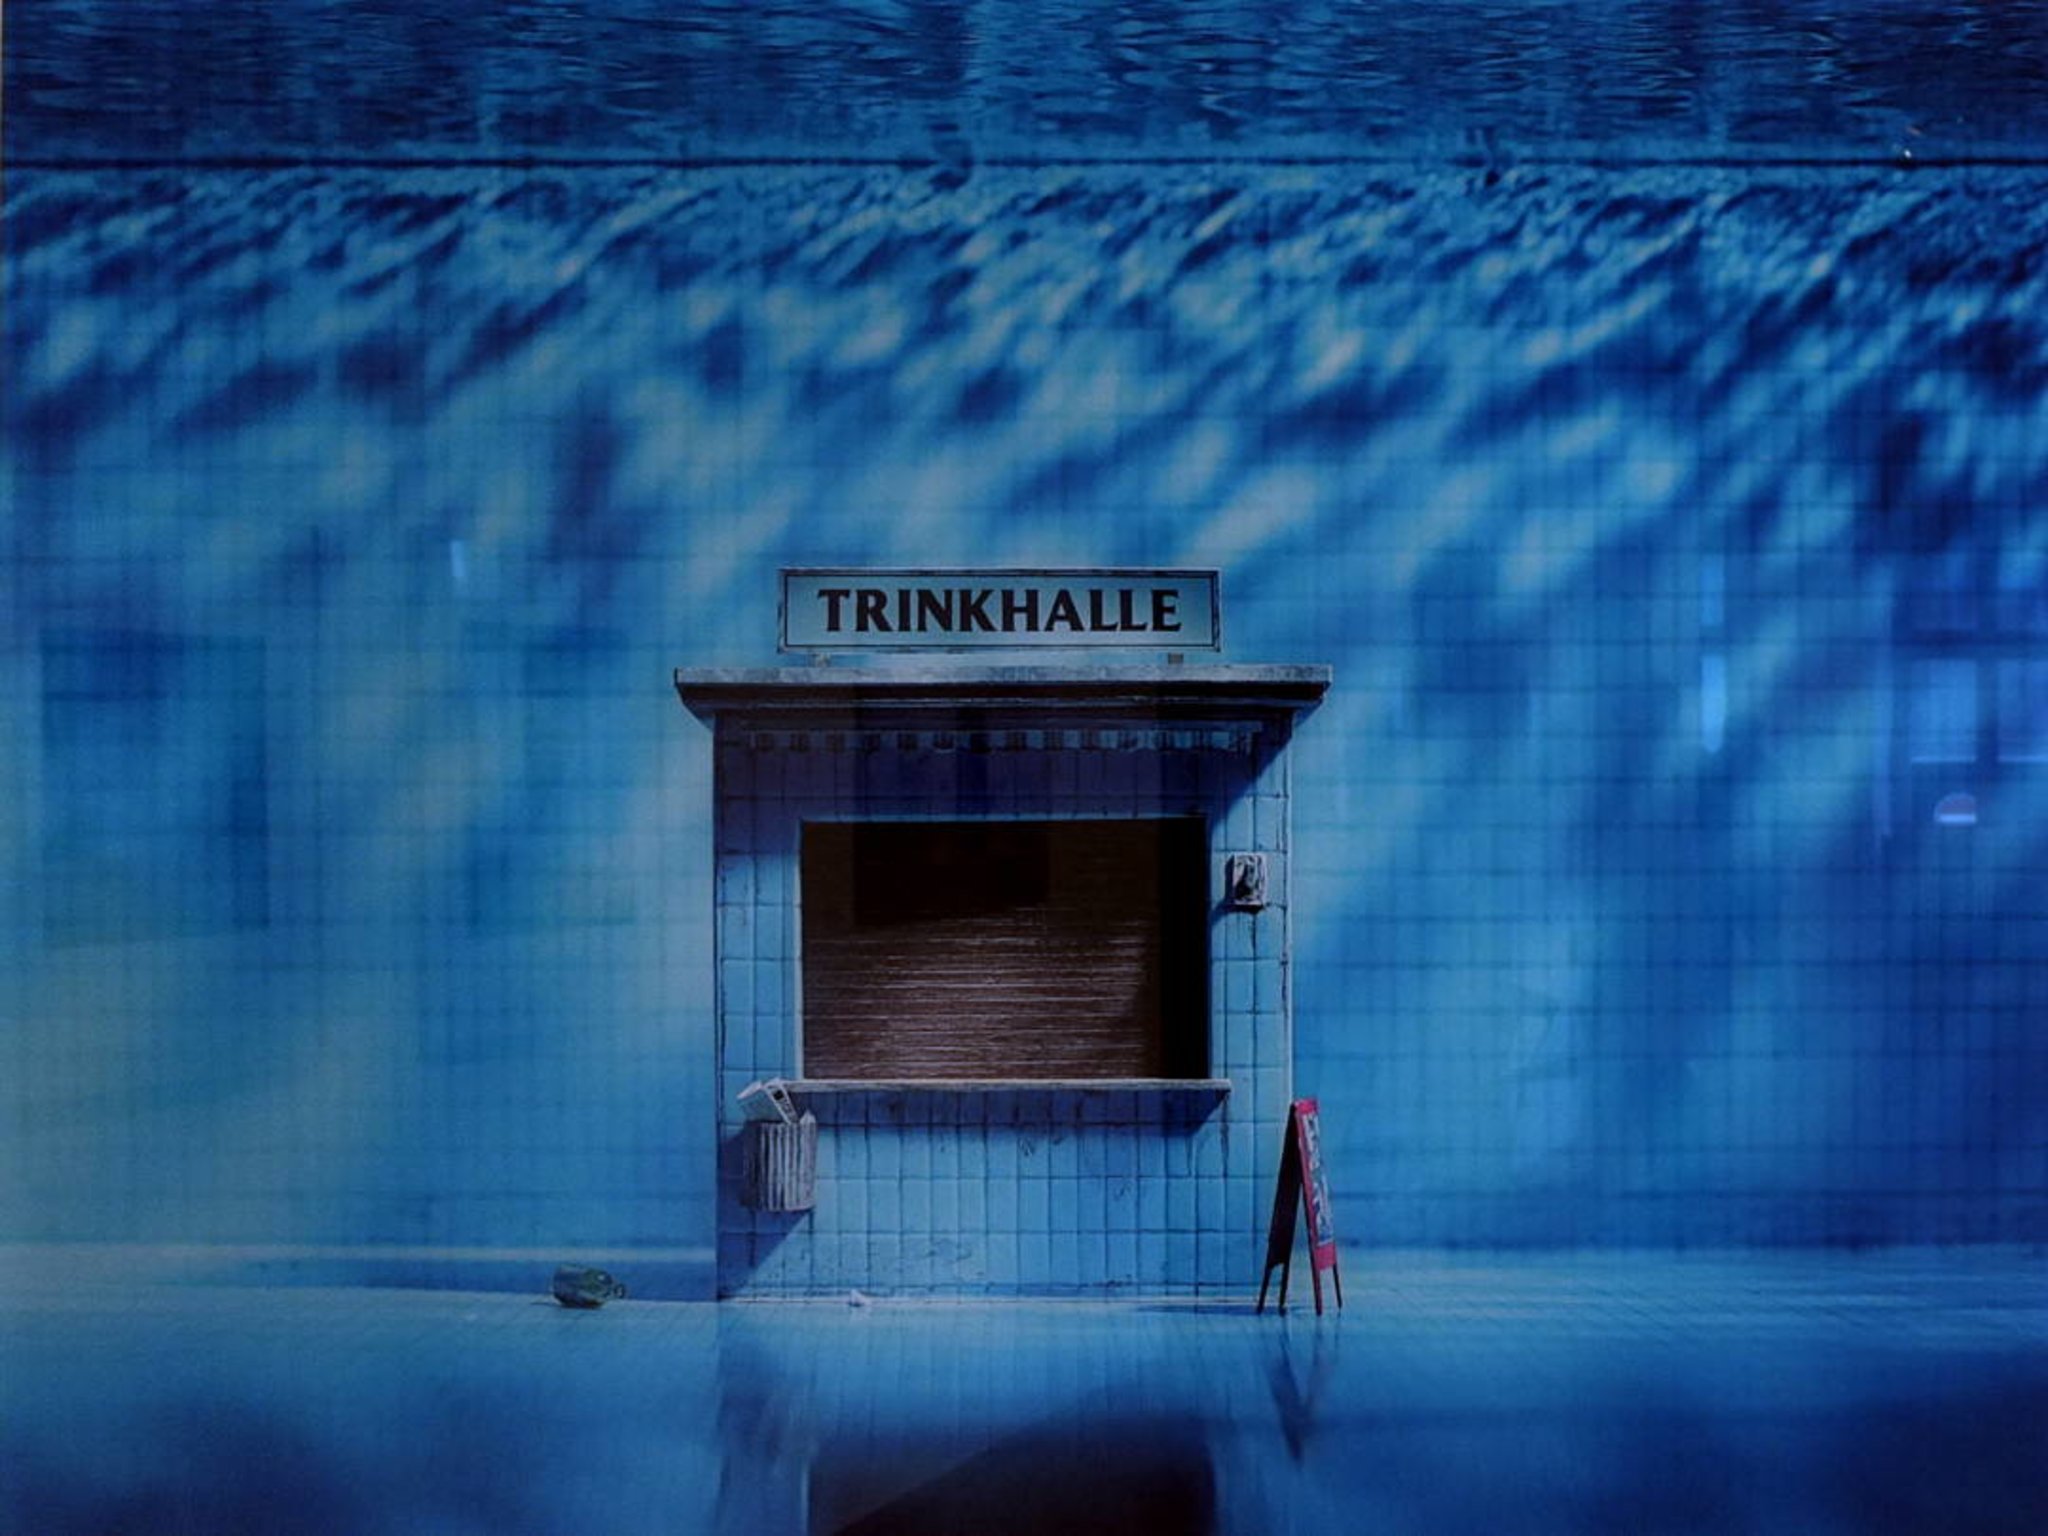 der Schriftzug Trinkhalle über einer geschlossenen Verkaufsstelle unter Wasser